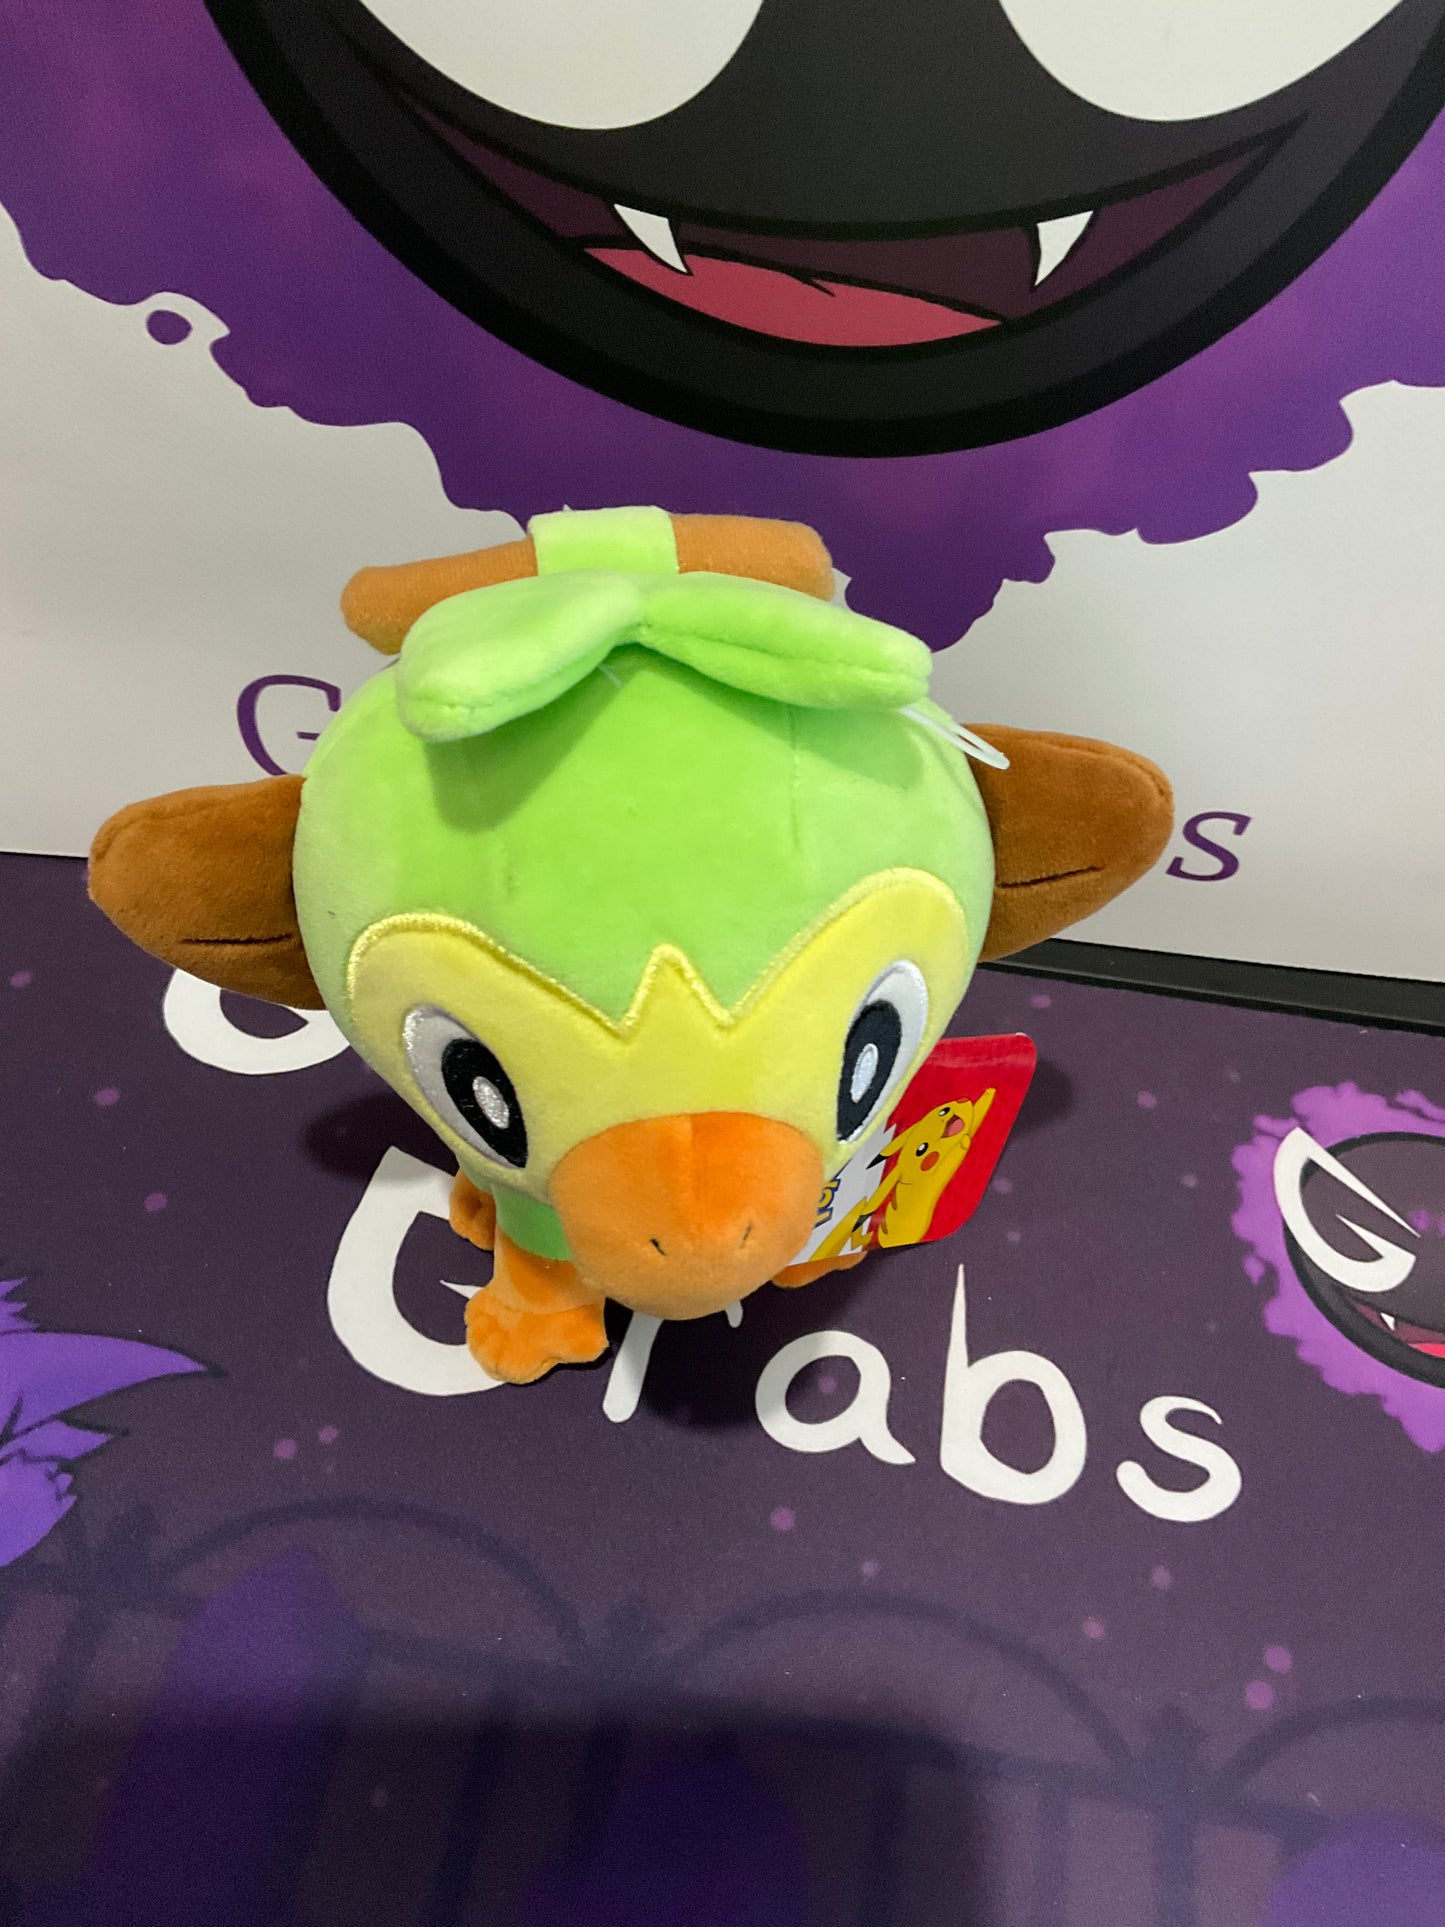 Pokémon Grookey 8-inch Plush Toy